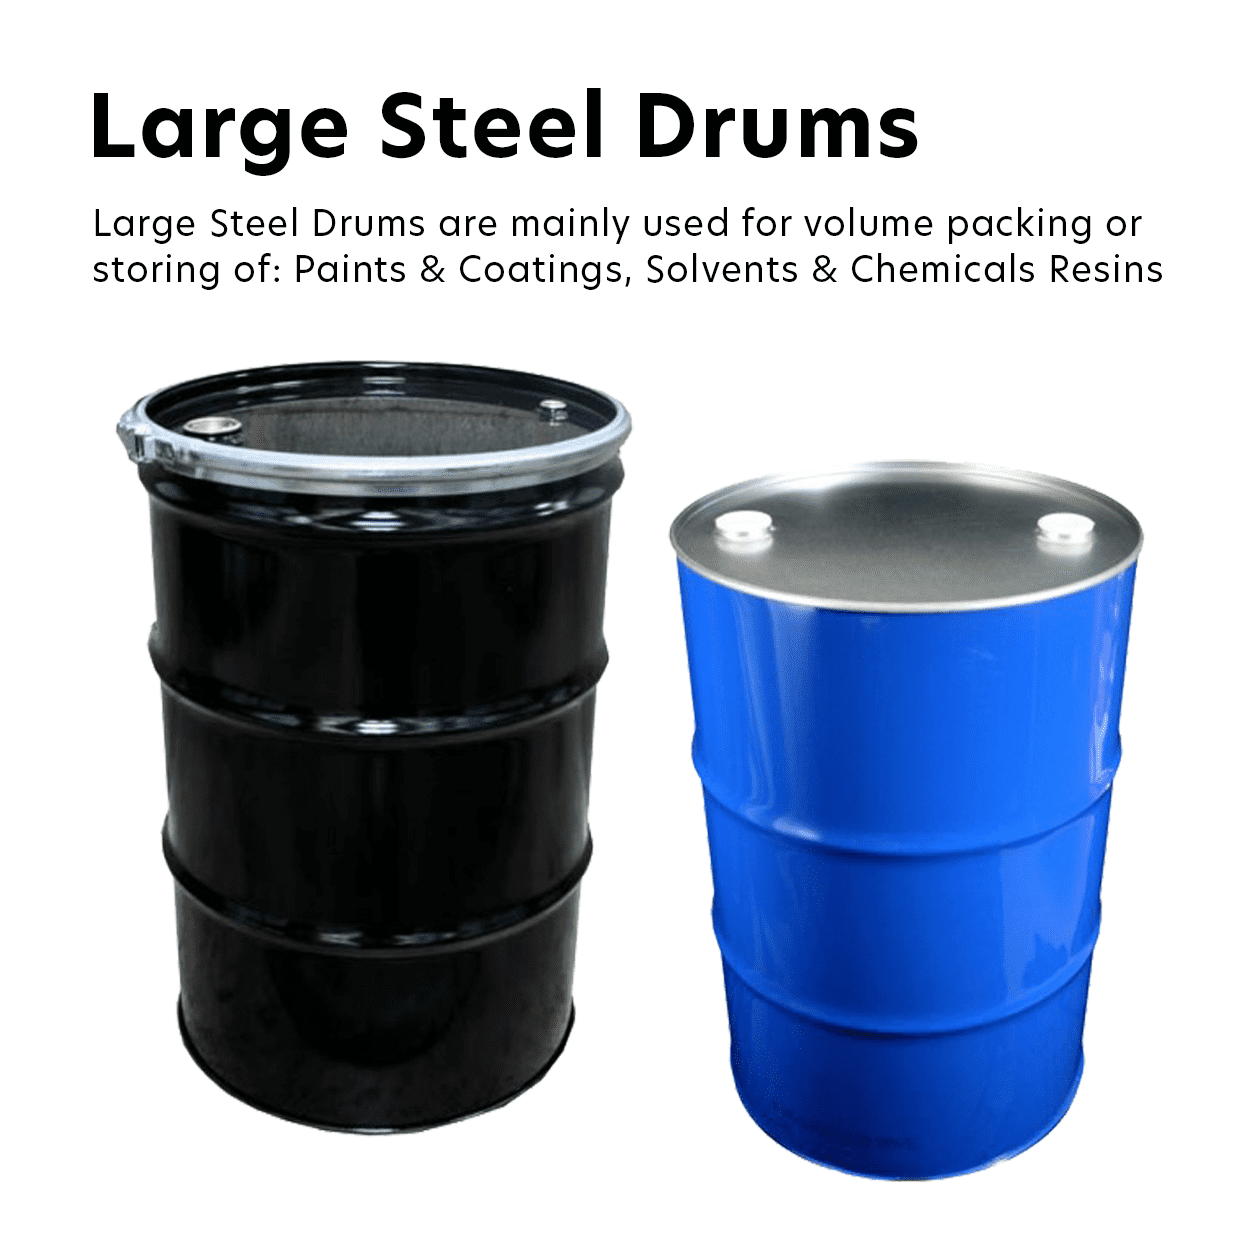 Large Steel Drums